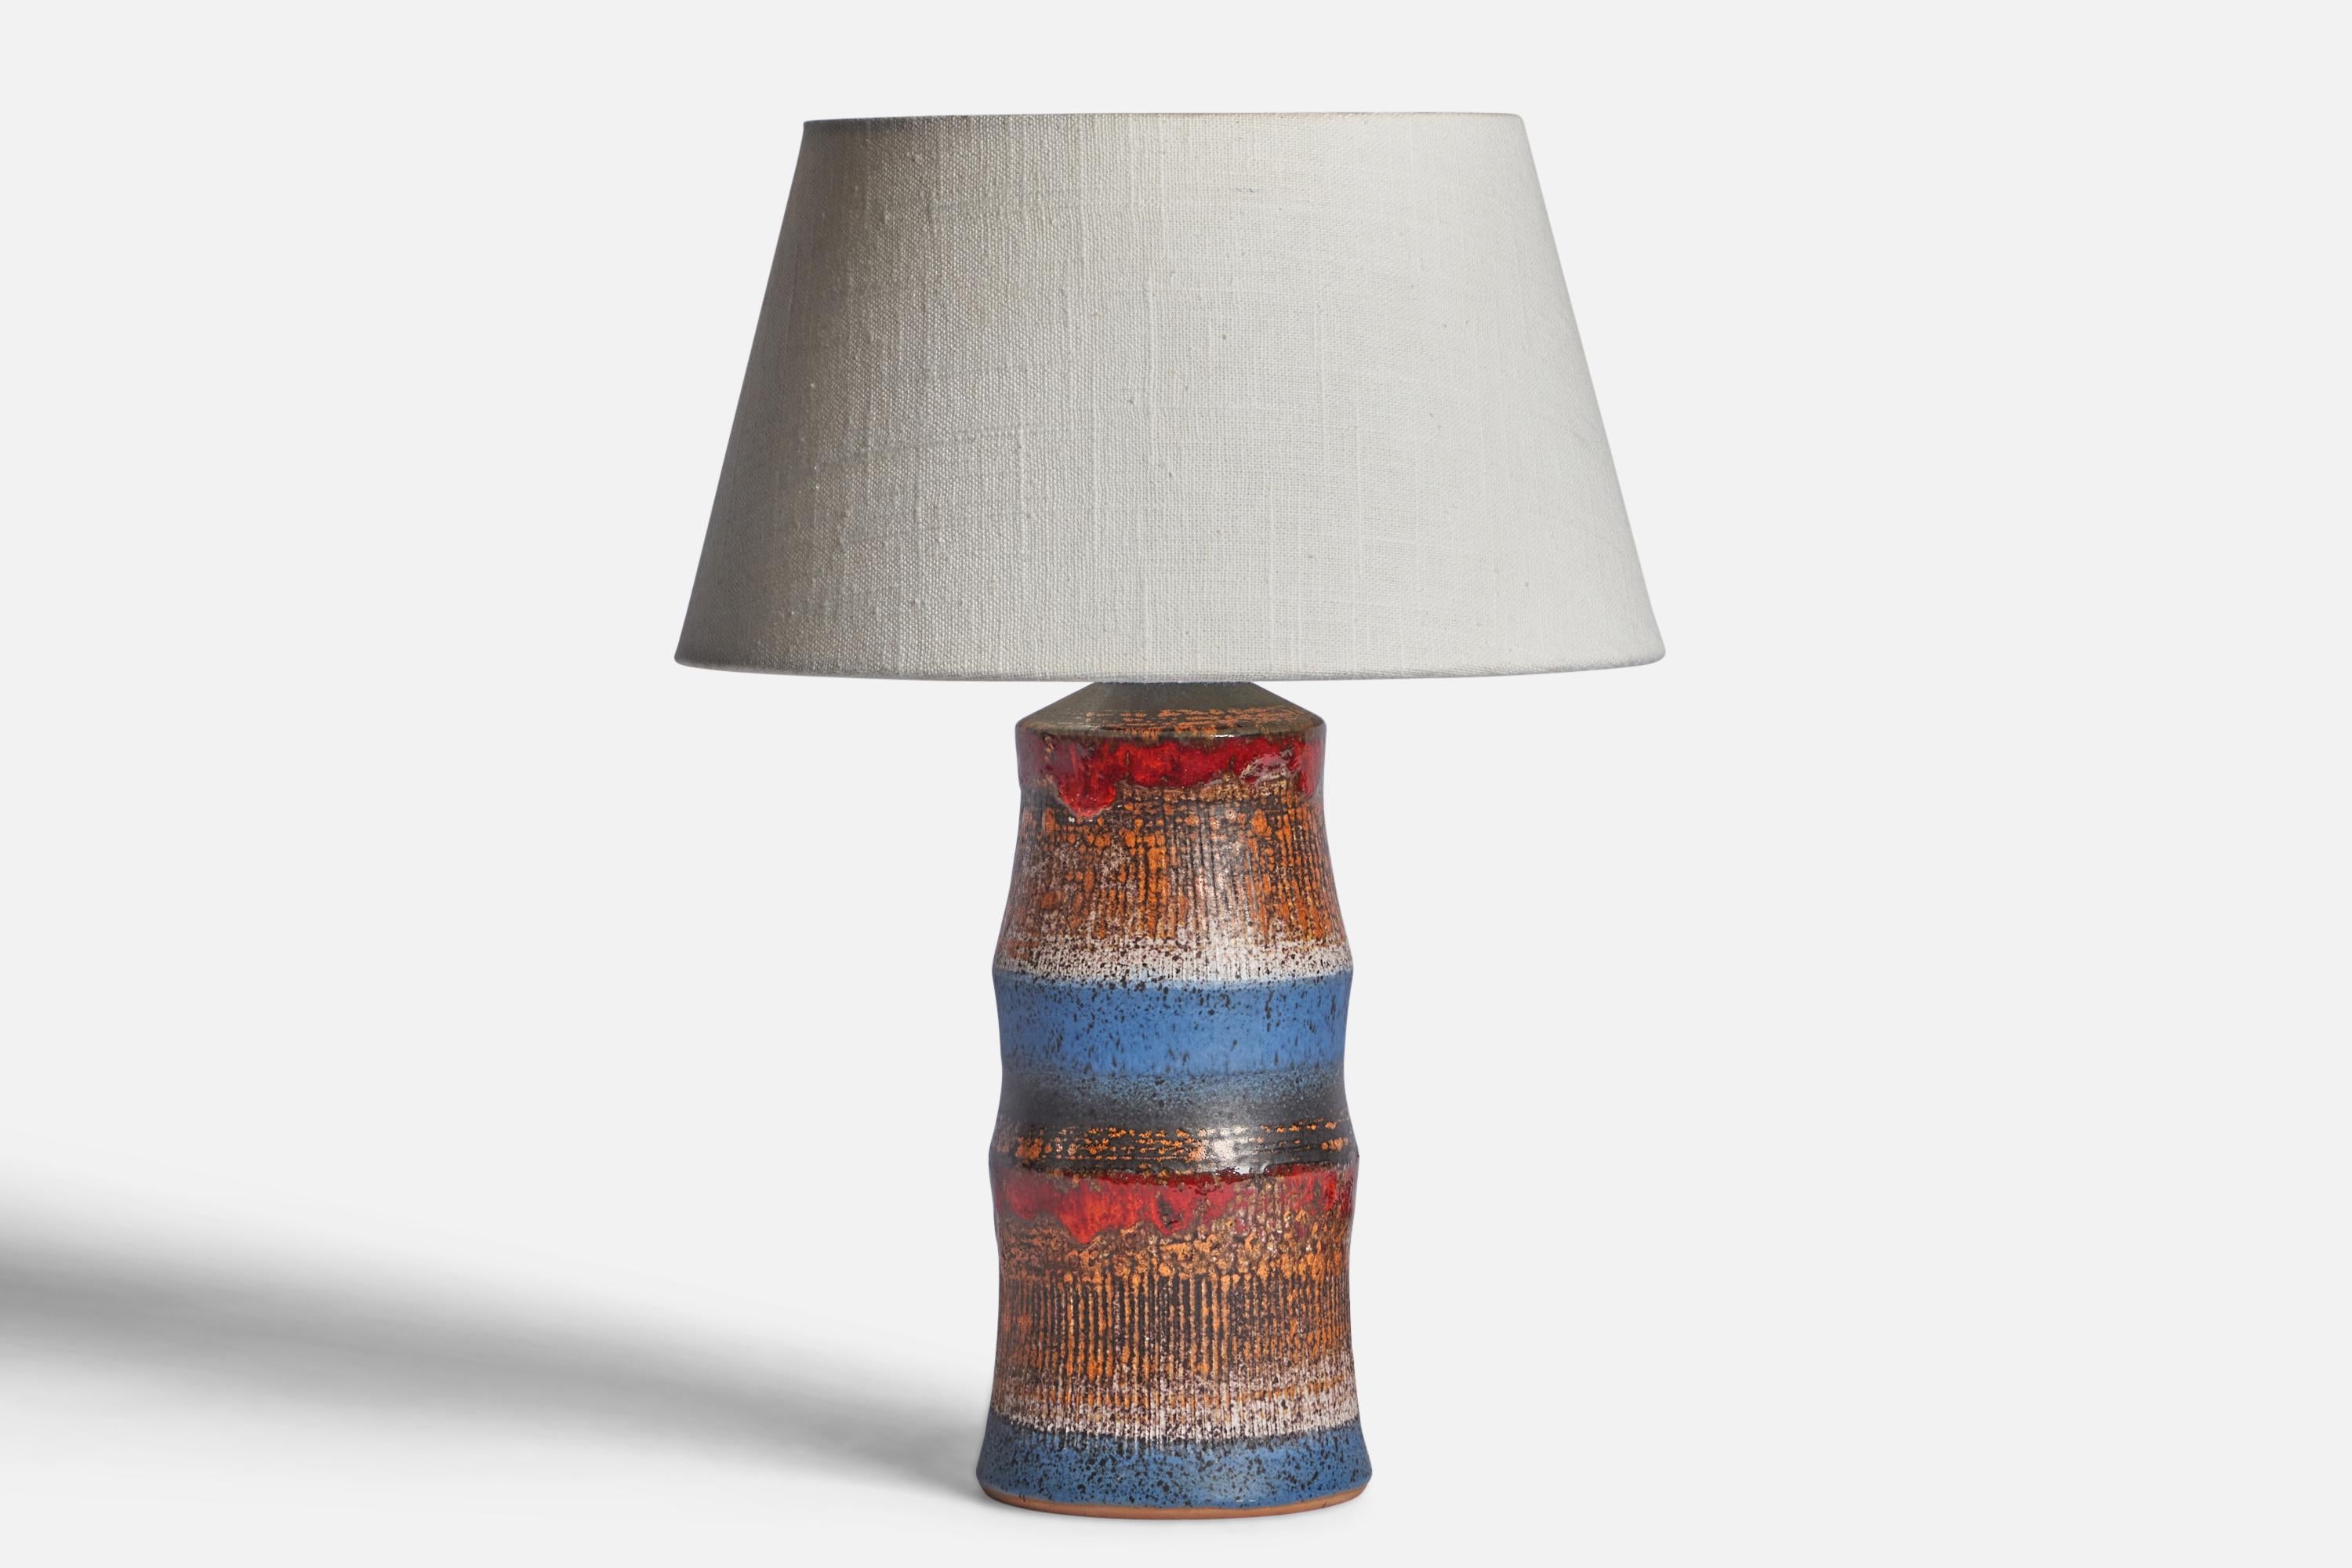 Lampe de table en grès émaillé brun, bleu et rouge, conçue et produite par Tilgmans Keramik, Suède, années 1960.

Dimensions de la lampe (pouces) : 10.75